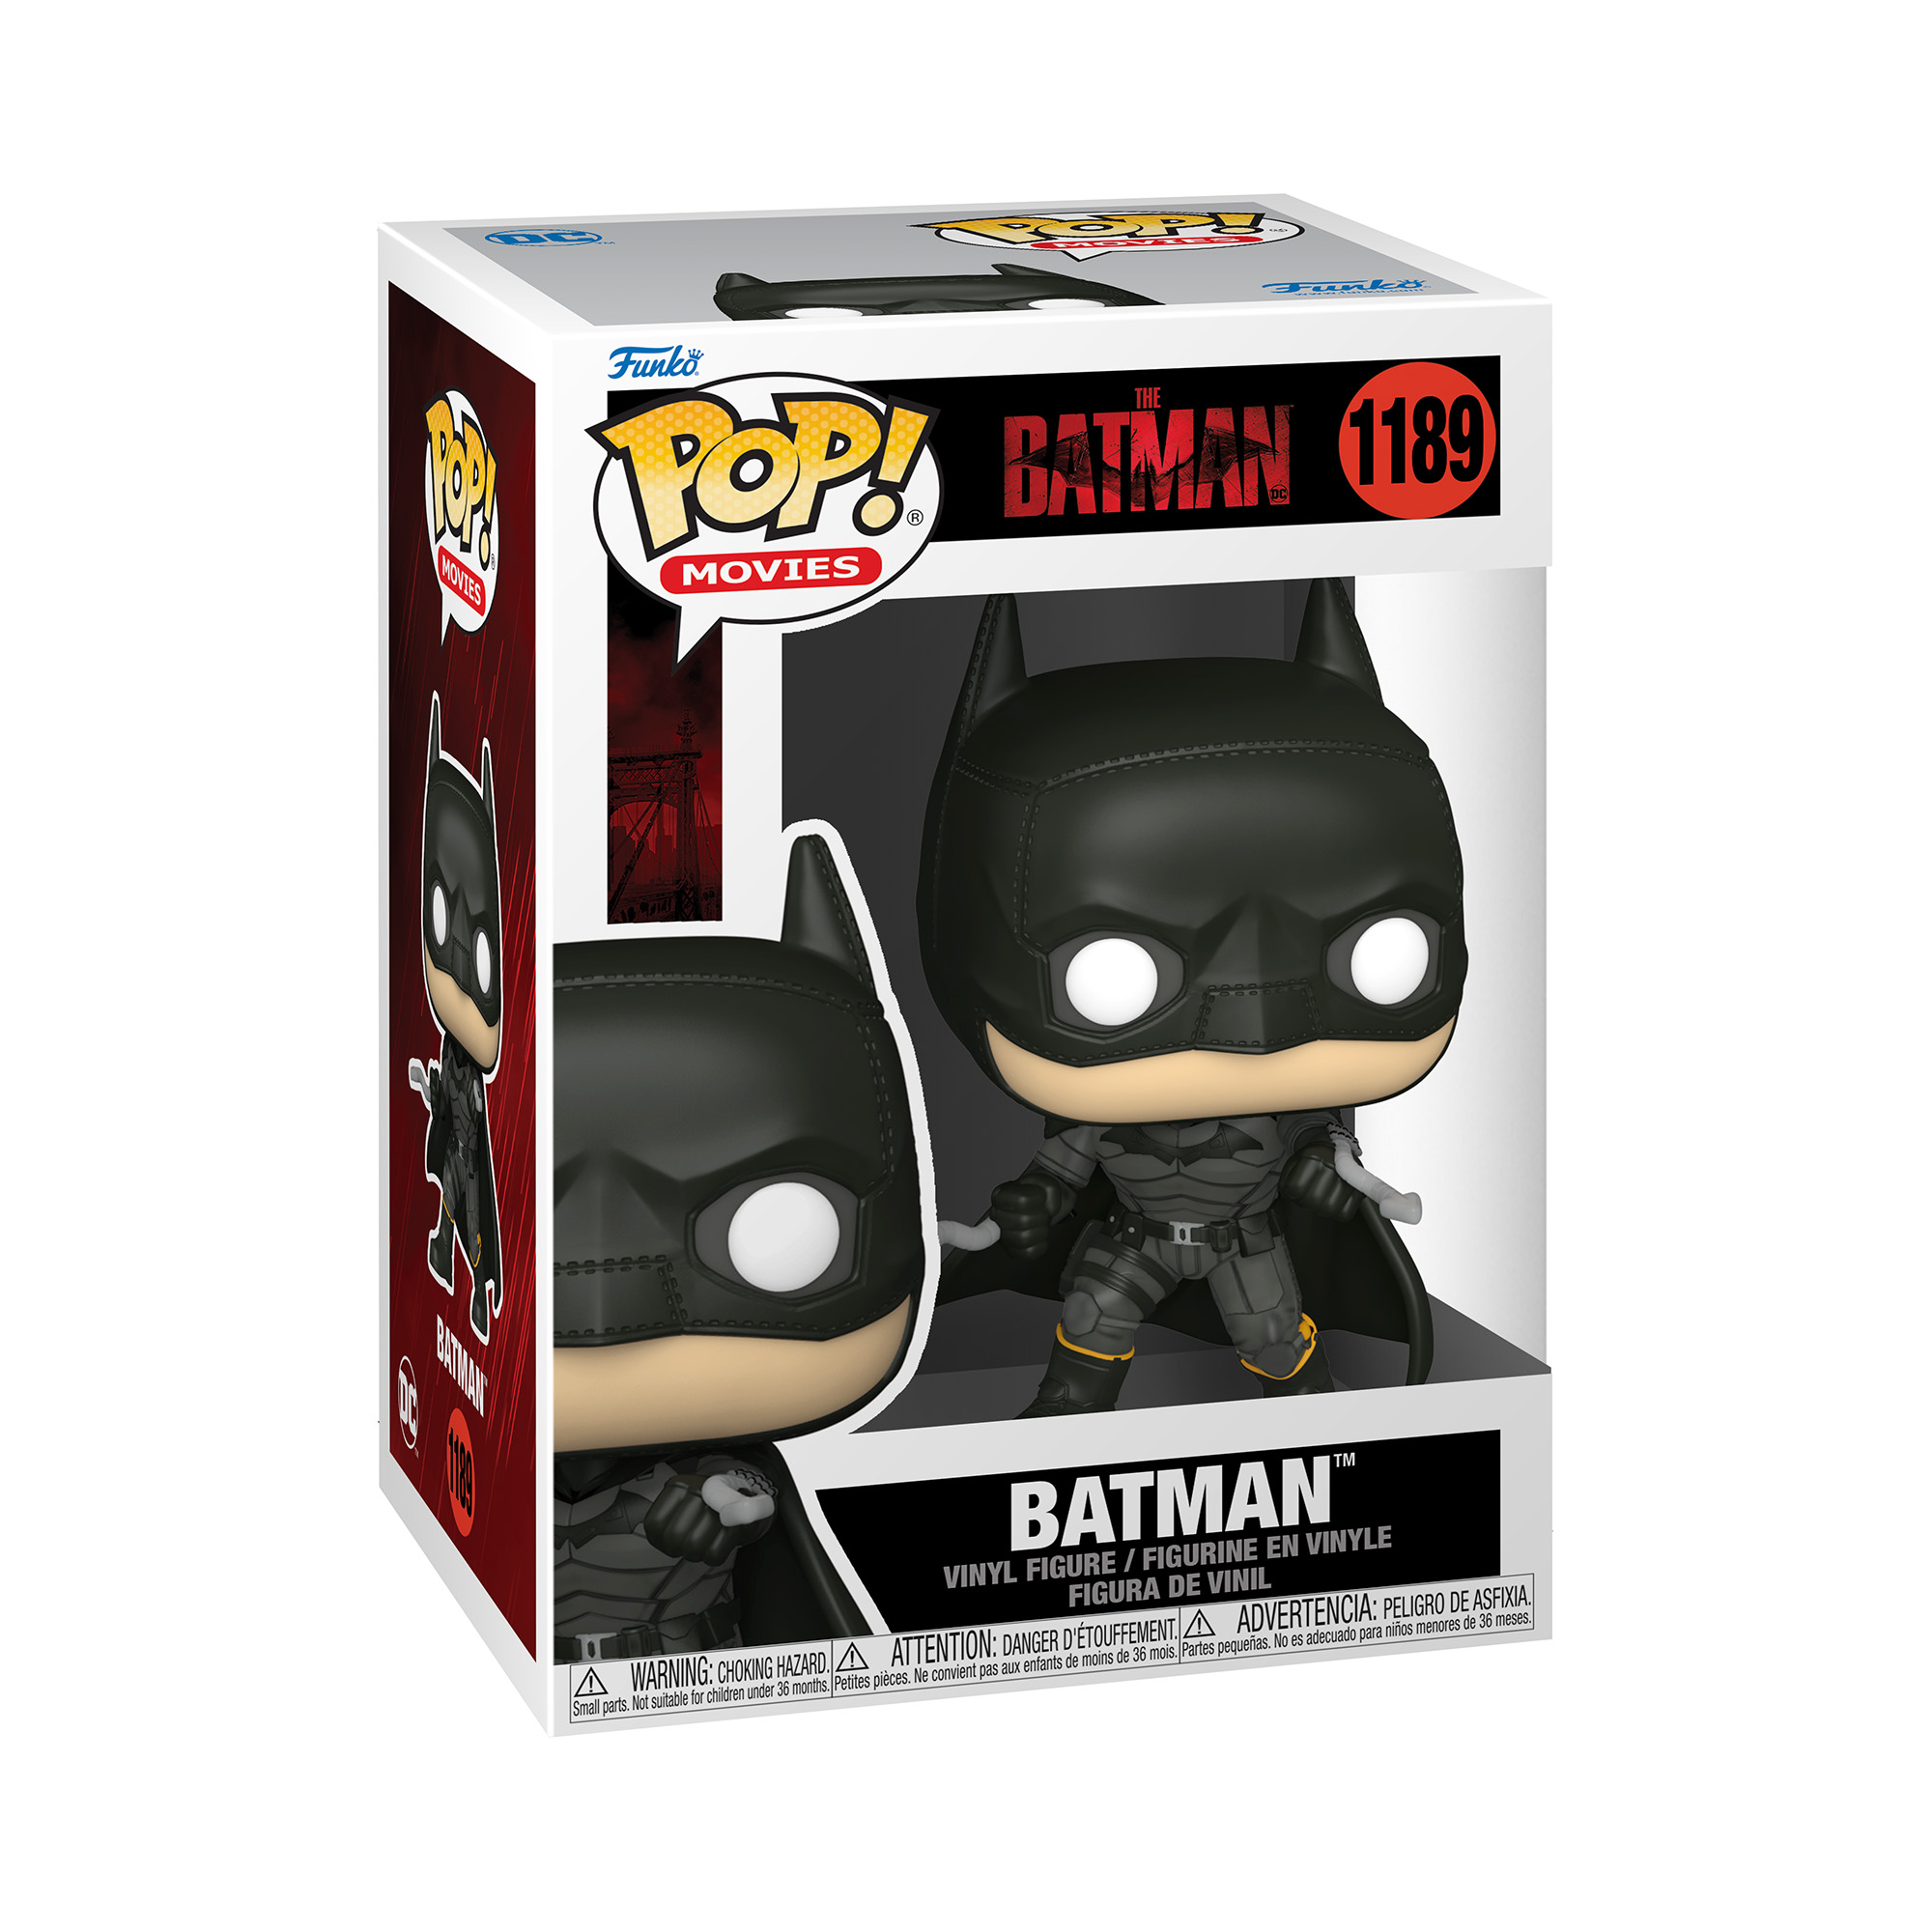 Pop movies: batman - BATMAN, DC COMICS, FUNKO POP!